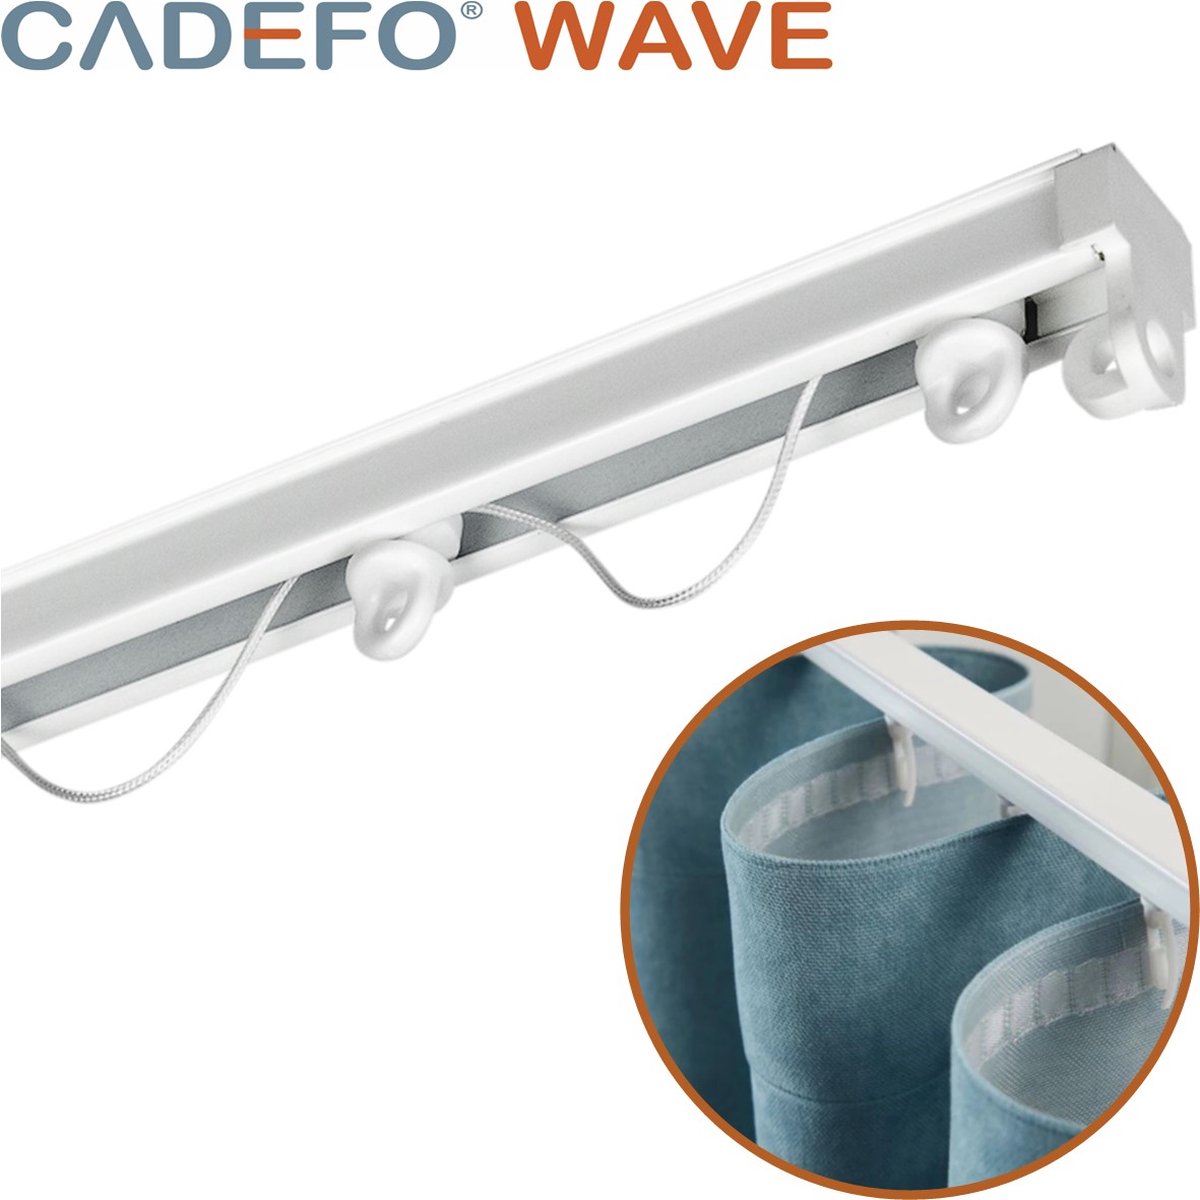 CADEFO WAVE (401 - 450 cm) Gordijnrails - Compleet op maat! - UIT 1 STUK - Leverbaar tot 6 meter - Plafondbevestiging - Lengte 436 cm